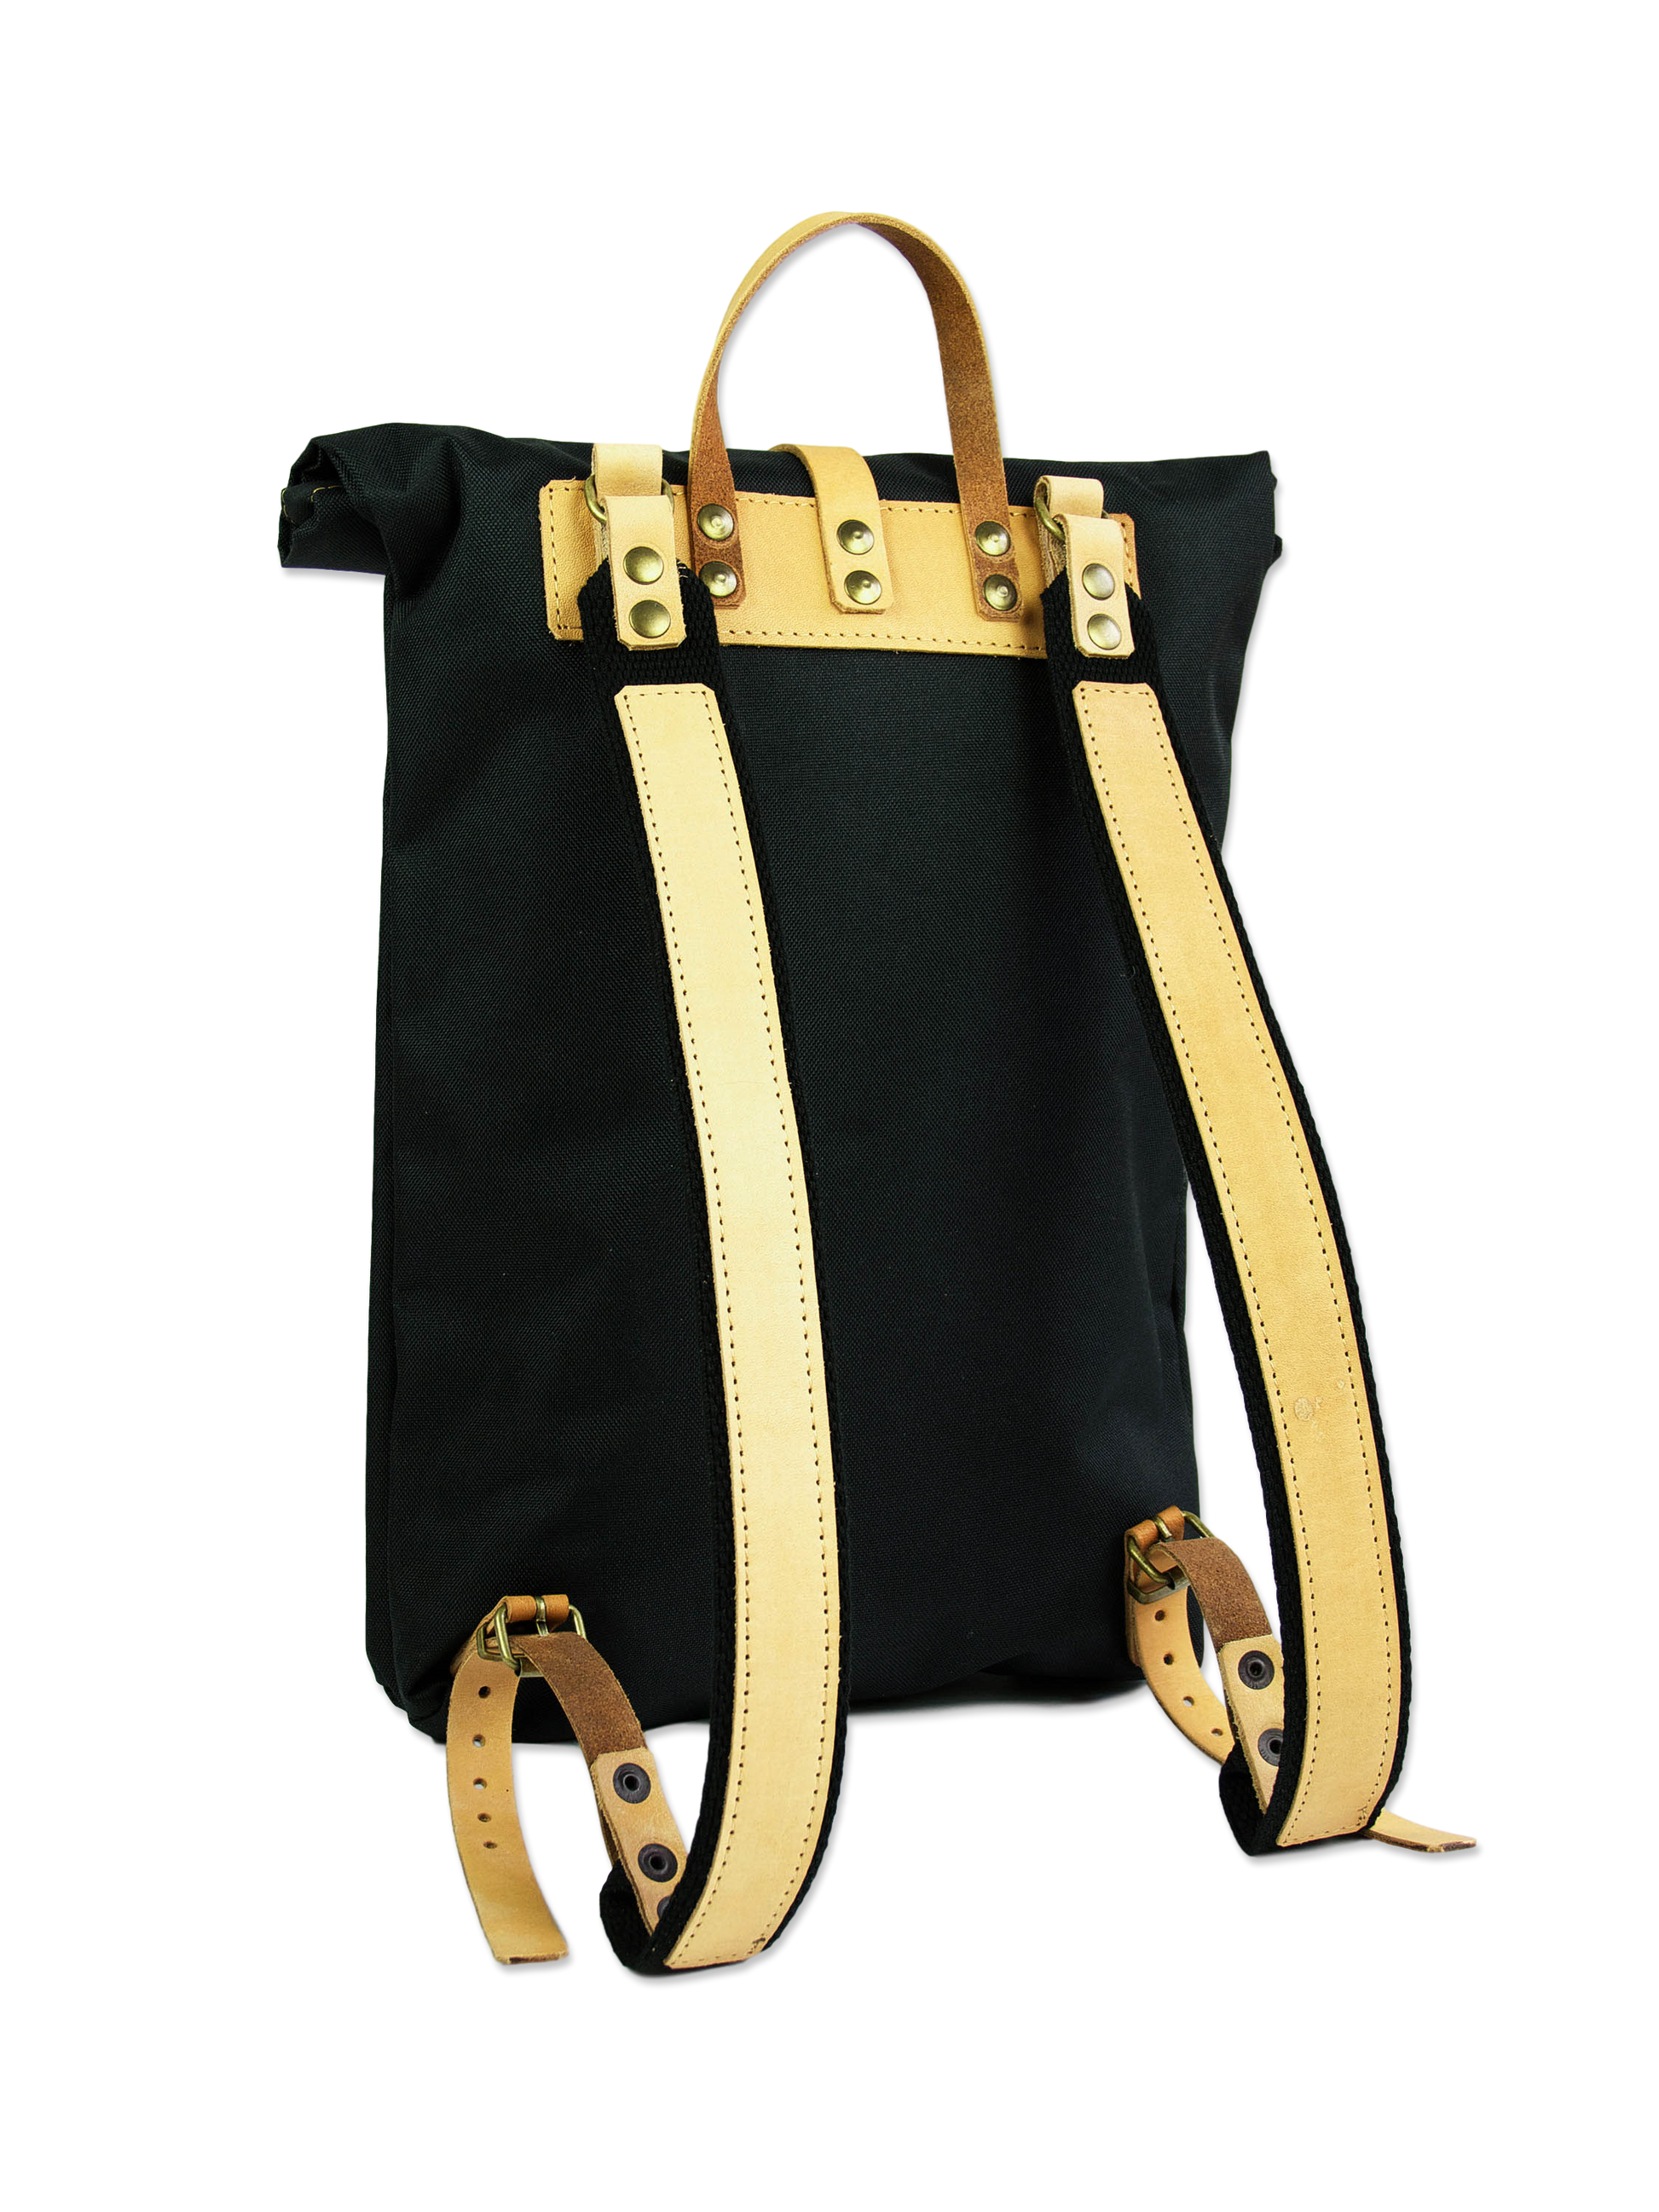 Black rolltop backpack waterproof